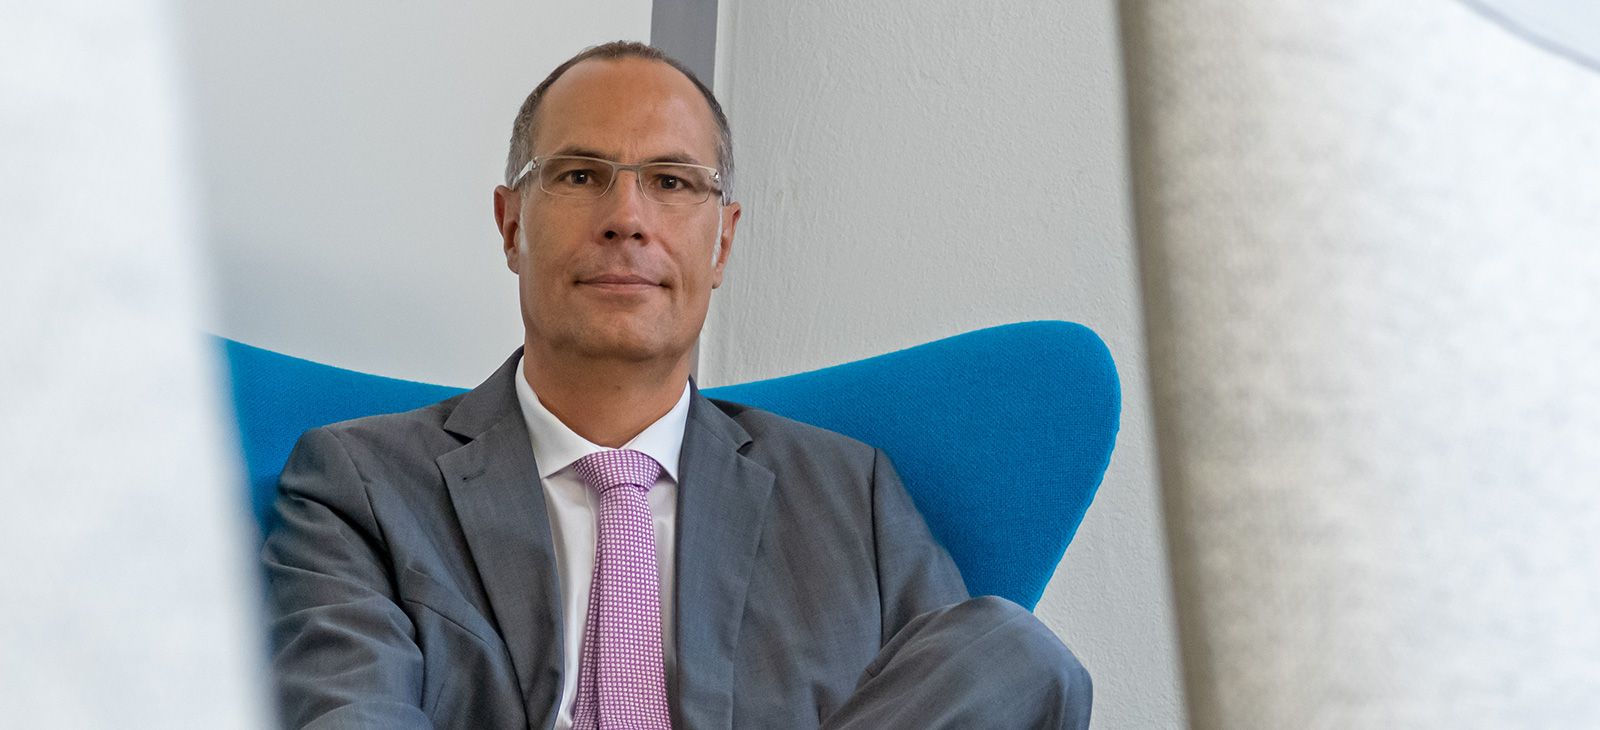 Uwe Scholz Consult Interim Management Ergebnisverbesserung Unternehmensnachfolge